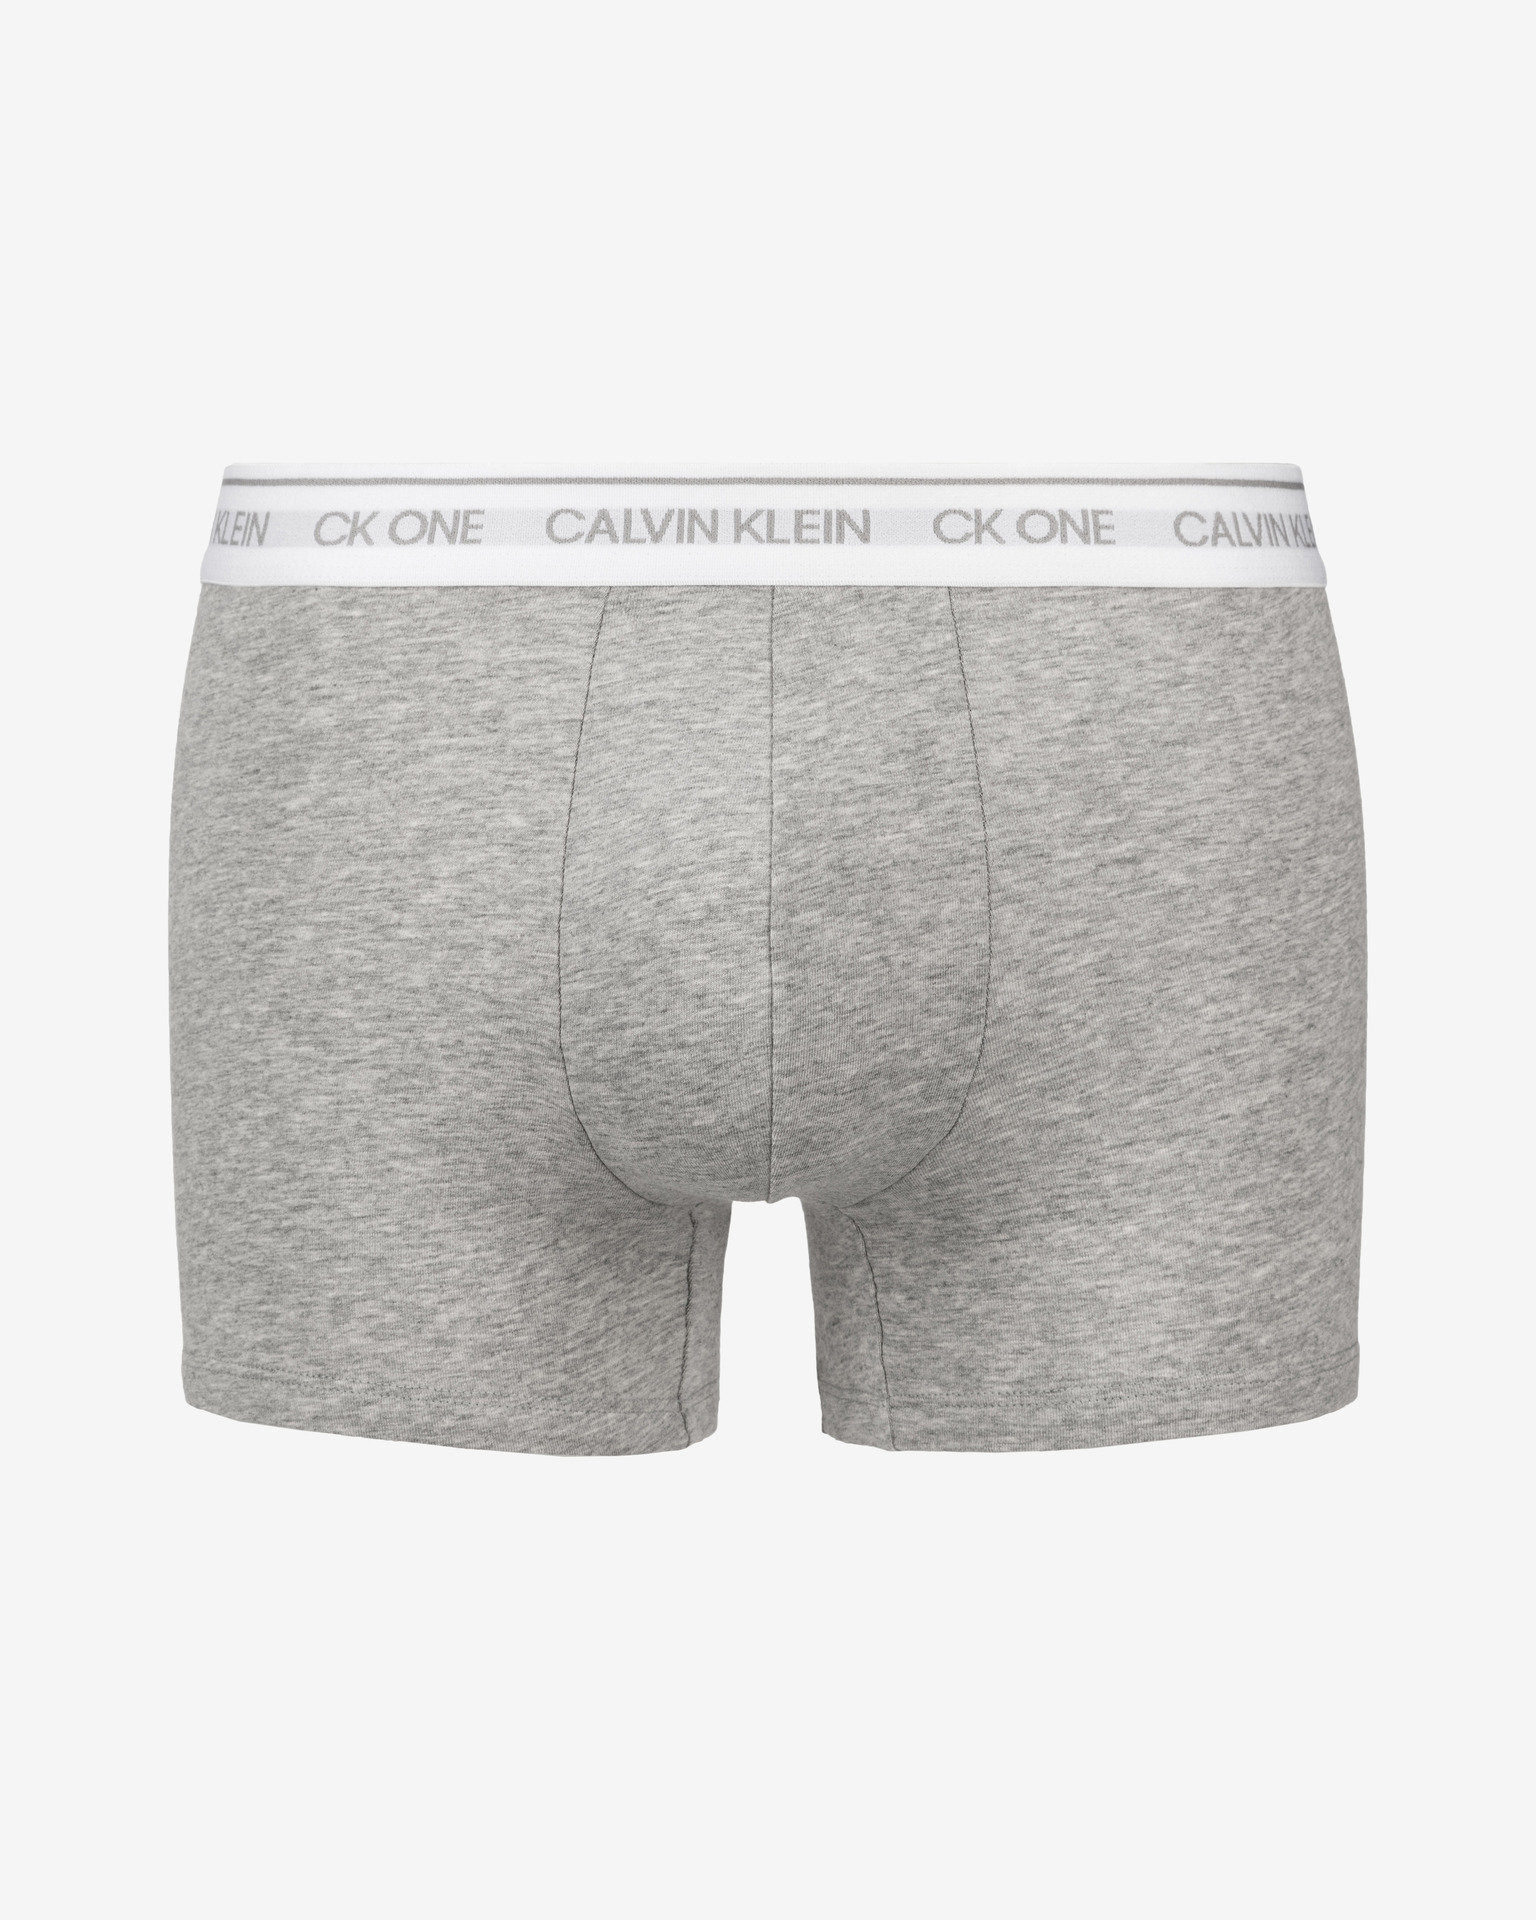 Boxerky Calvin Klein